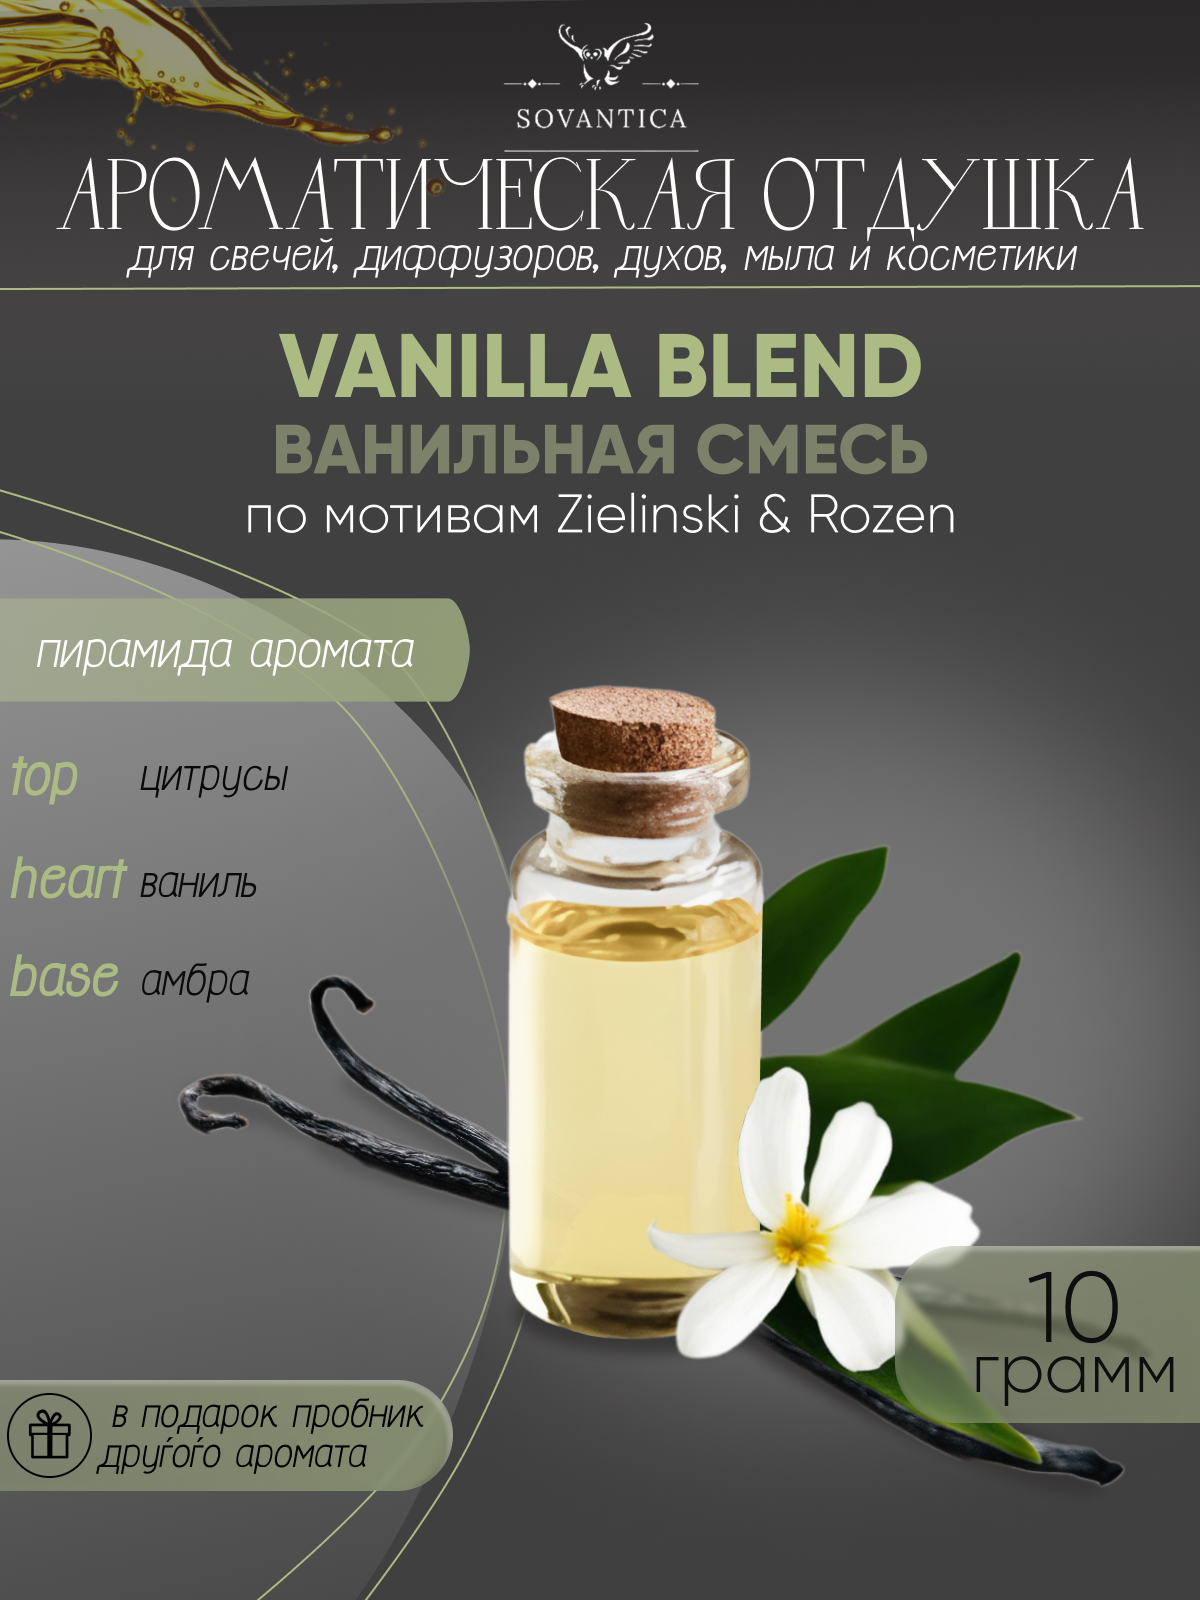 Ароматическая отдушка Ванильная смесь По мотивам Zielinski & Rozen — Vanilla blend 10гр